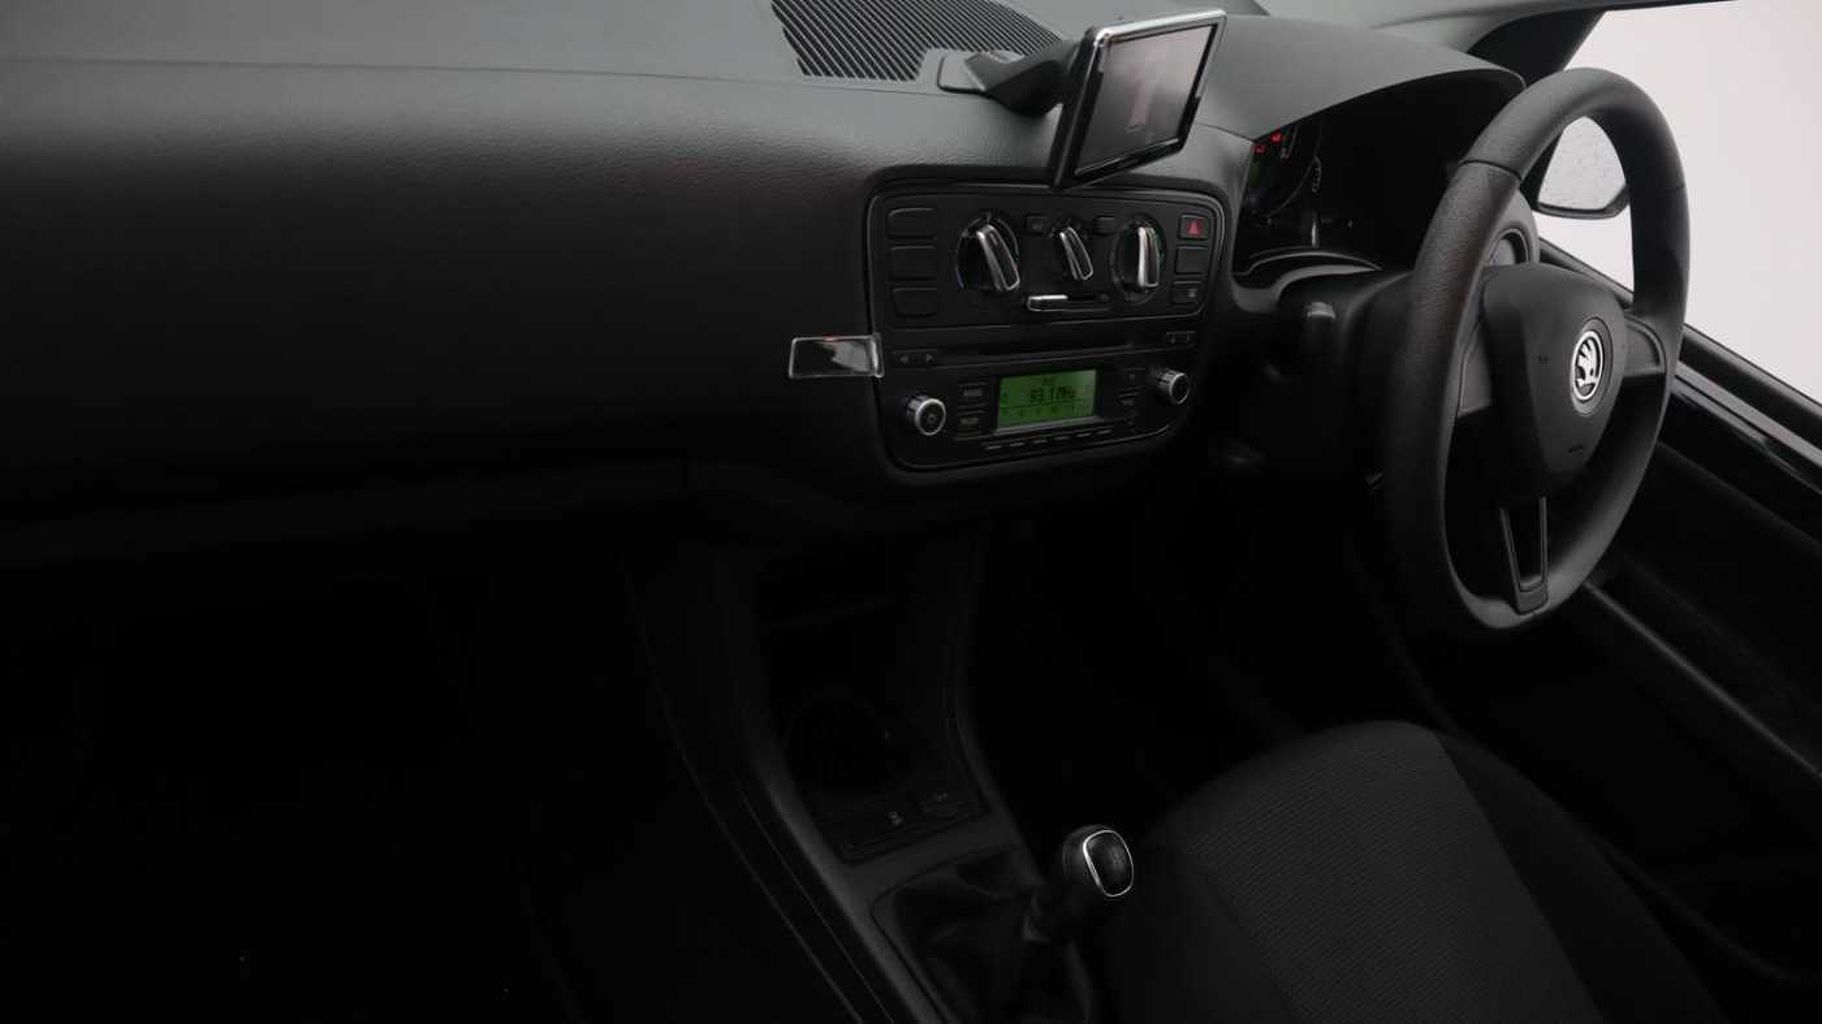 SKODA Citigo 1.0 MPI (60PS) SE Hatchback 5-Dr